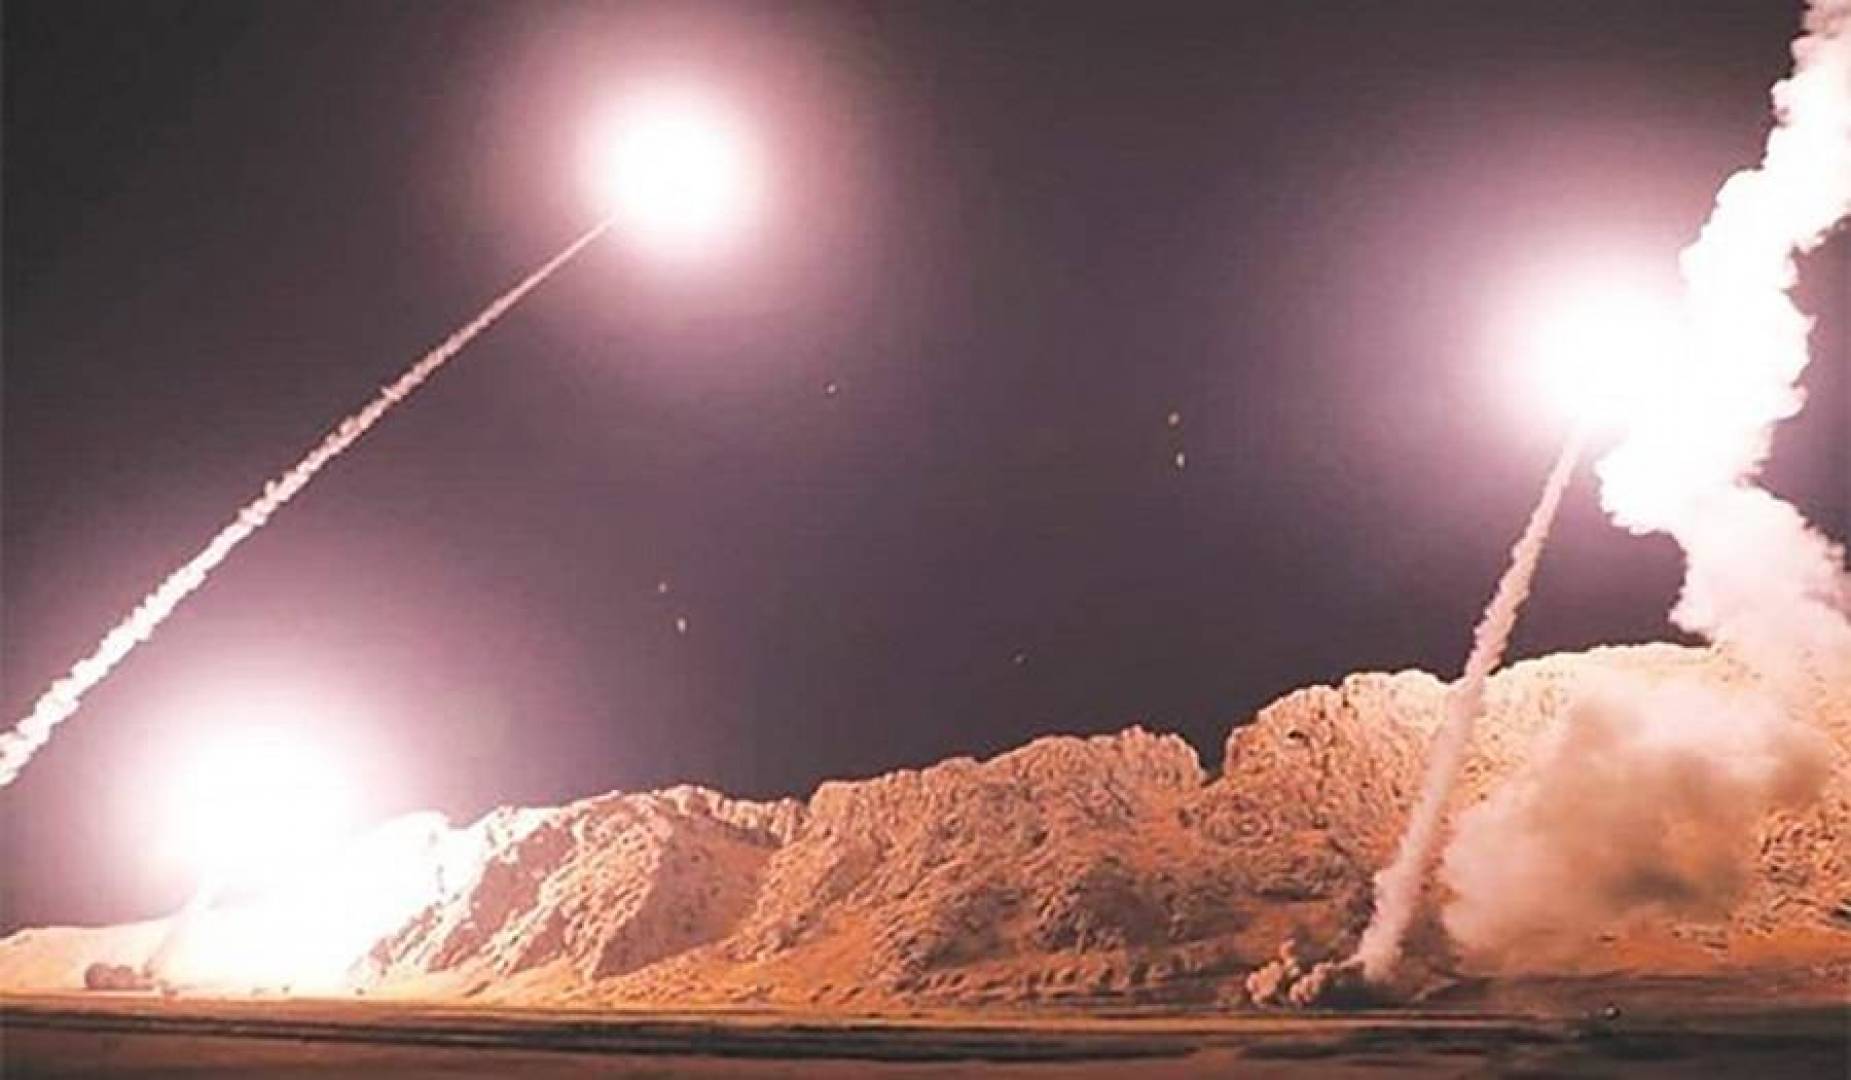 原创卫星照片公开证实伊朗导弹精确摧毁美基地美军伊朗不想杀人